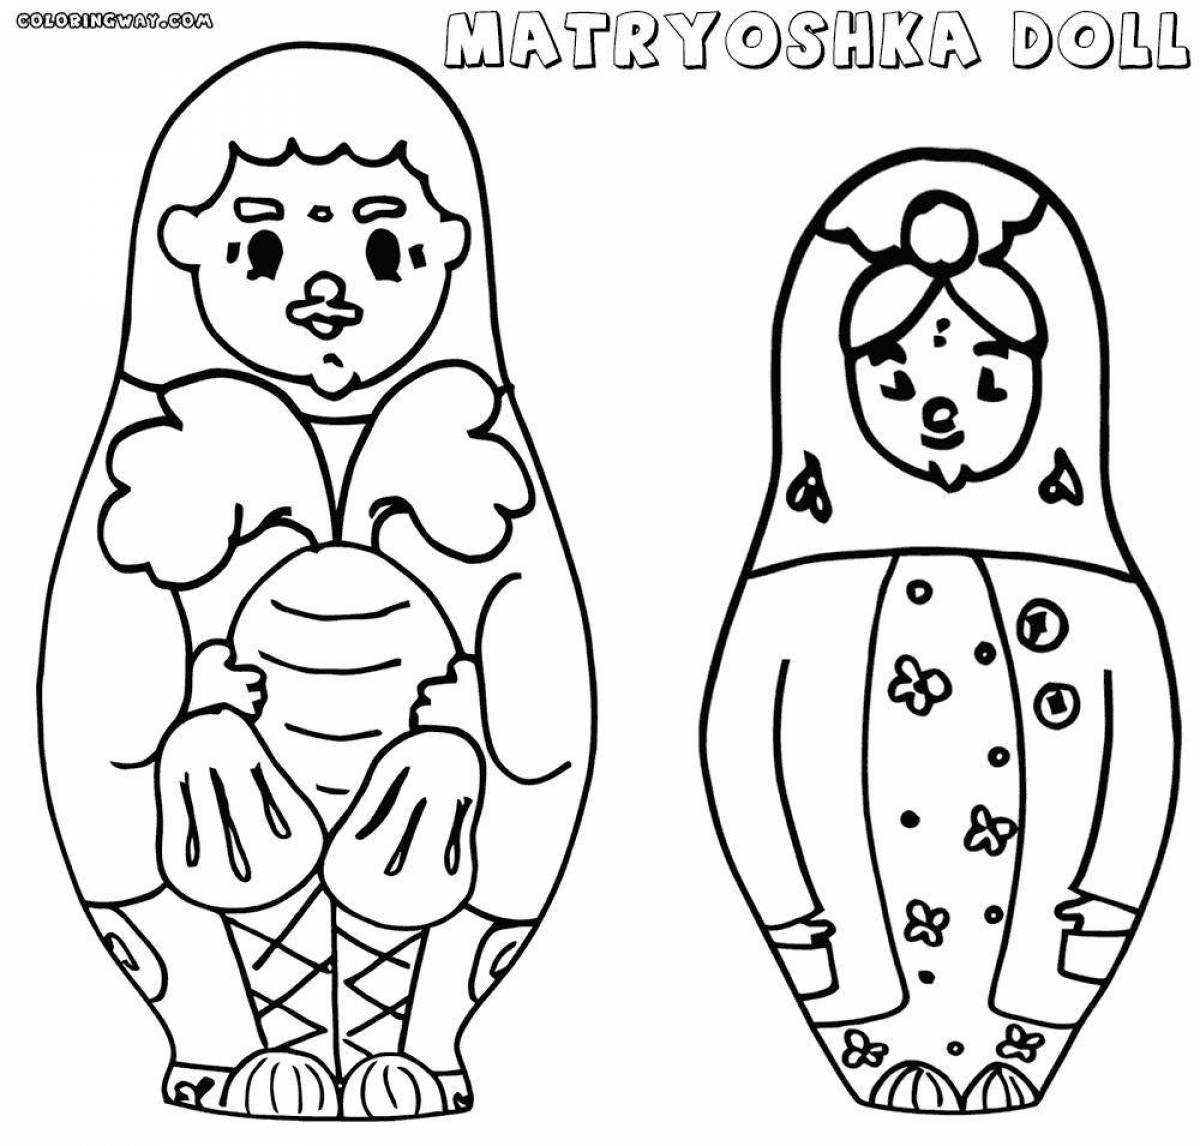 Matryoshka for children 5 6 years old #2